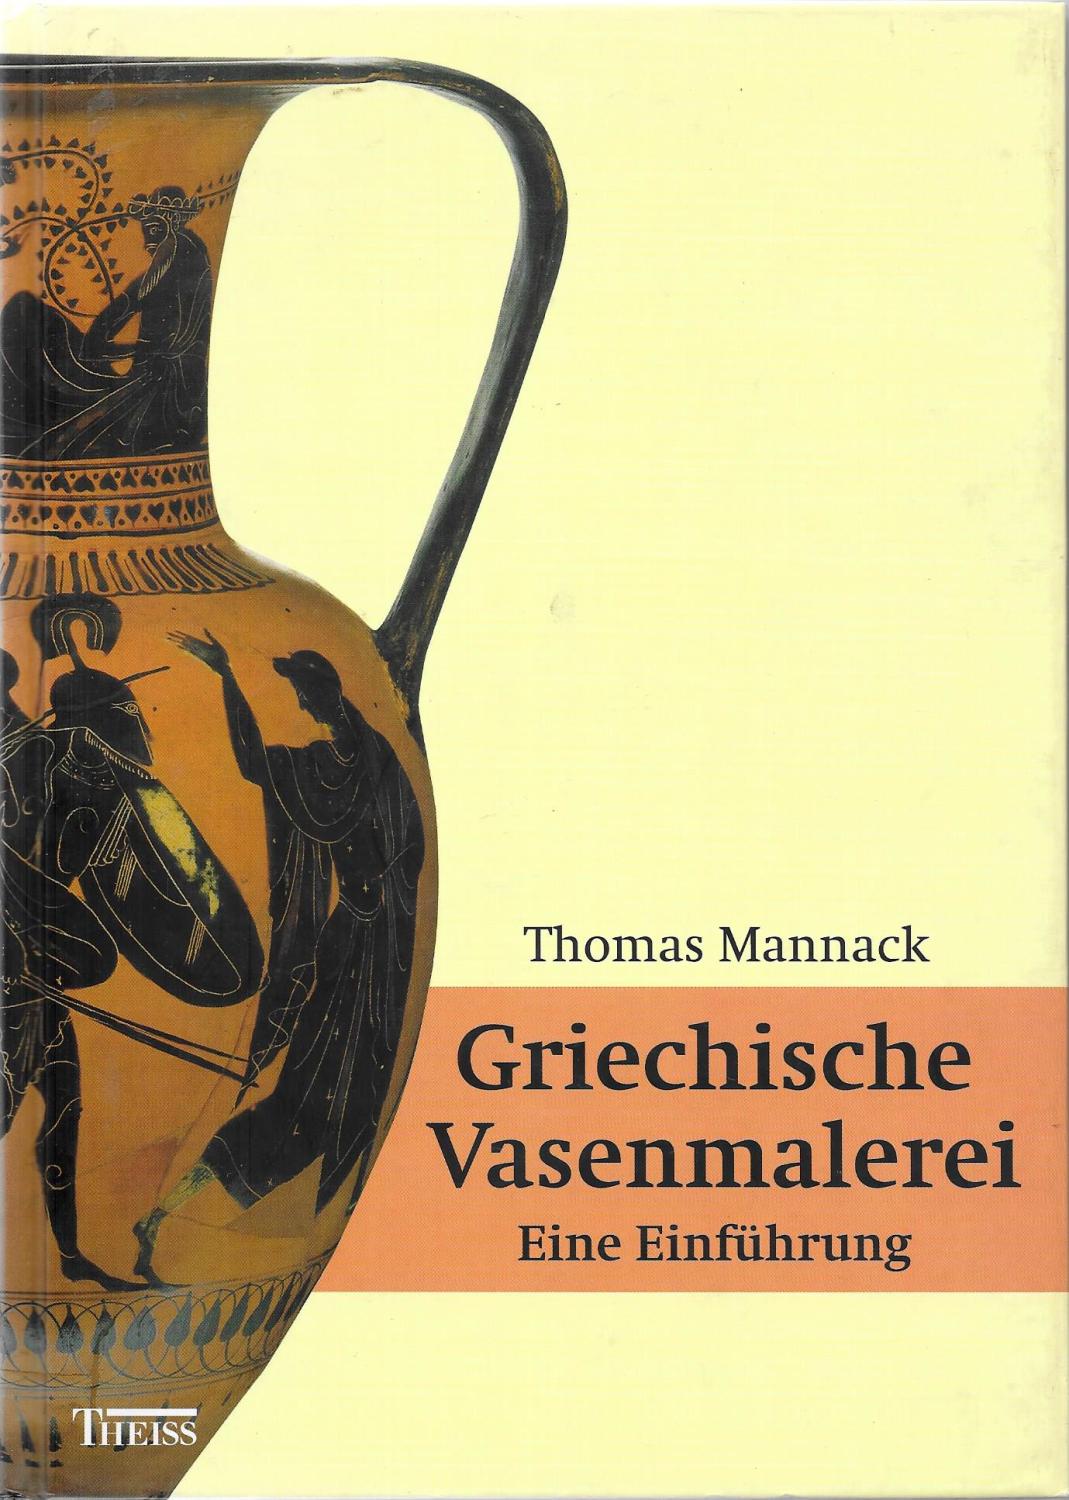 Grichische Vasenmalerei - Eine Einführung - Thomas Mannack